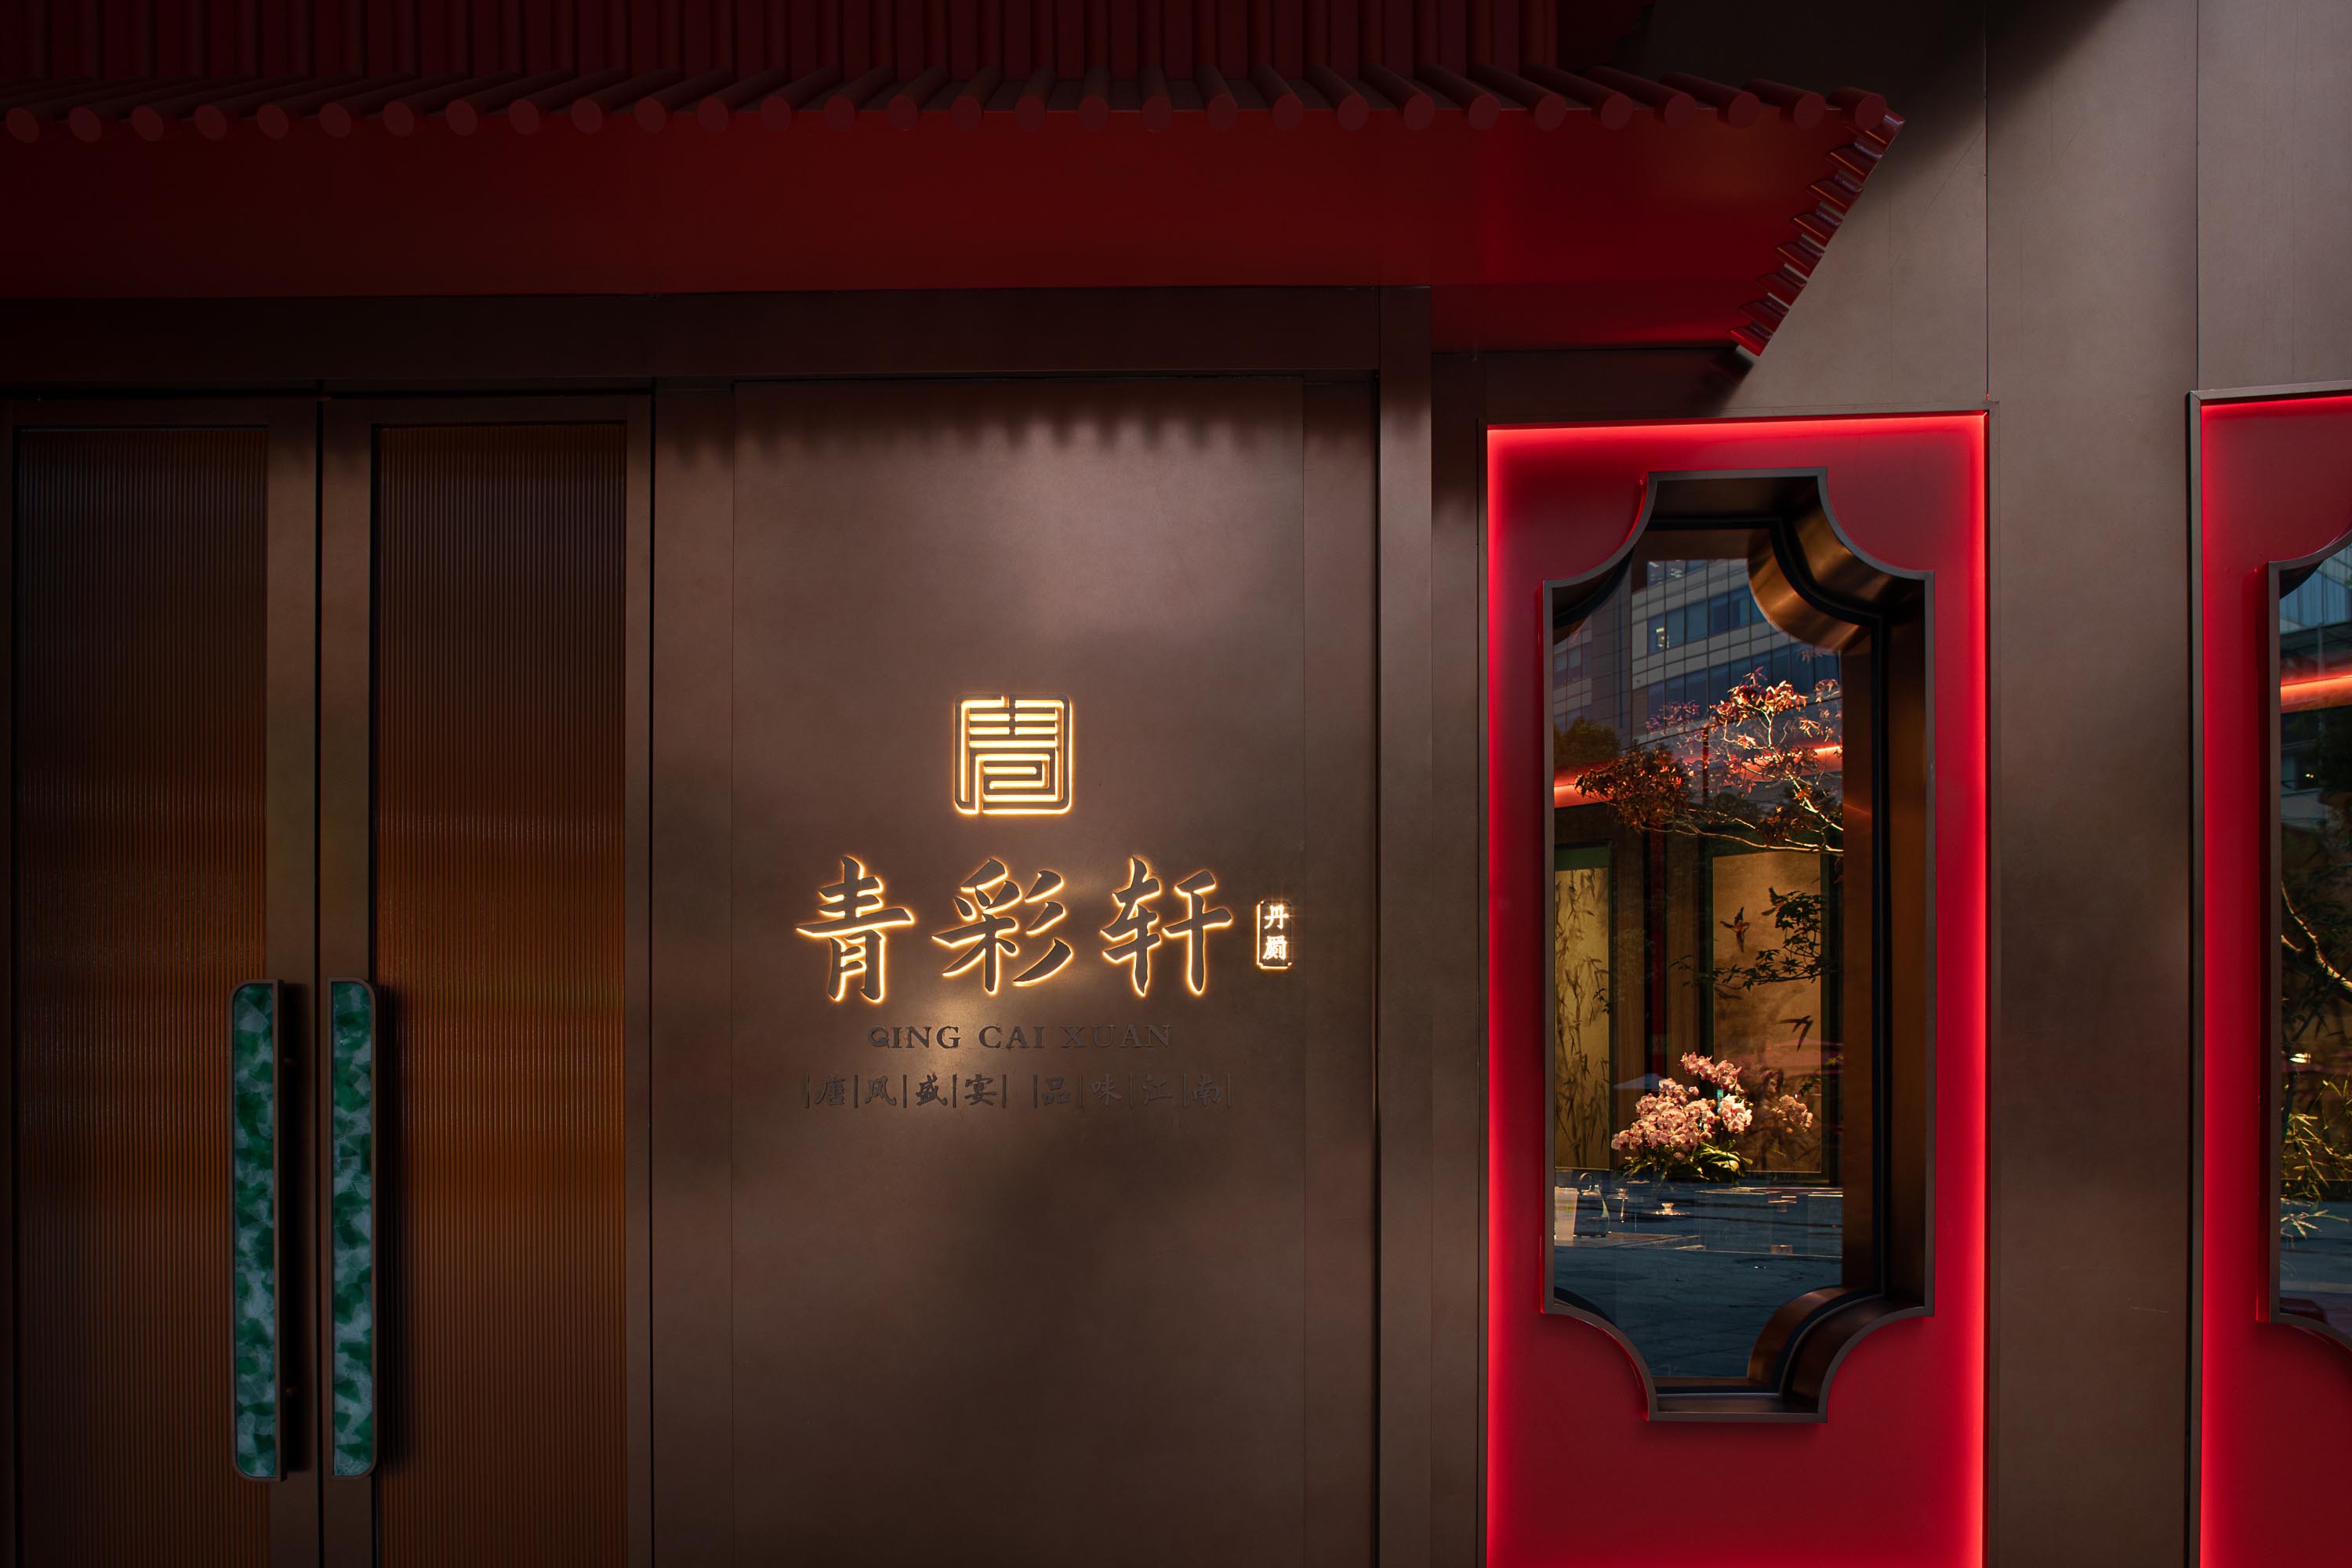 餐廳設計,高檔餐廳設計,青彩軒,中式餐廳設計,新中式餐廳,上海,餐廳設計案例,杭州橖峪,橖峪室內設計